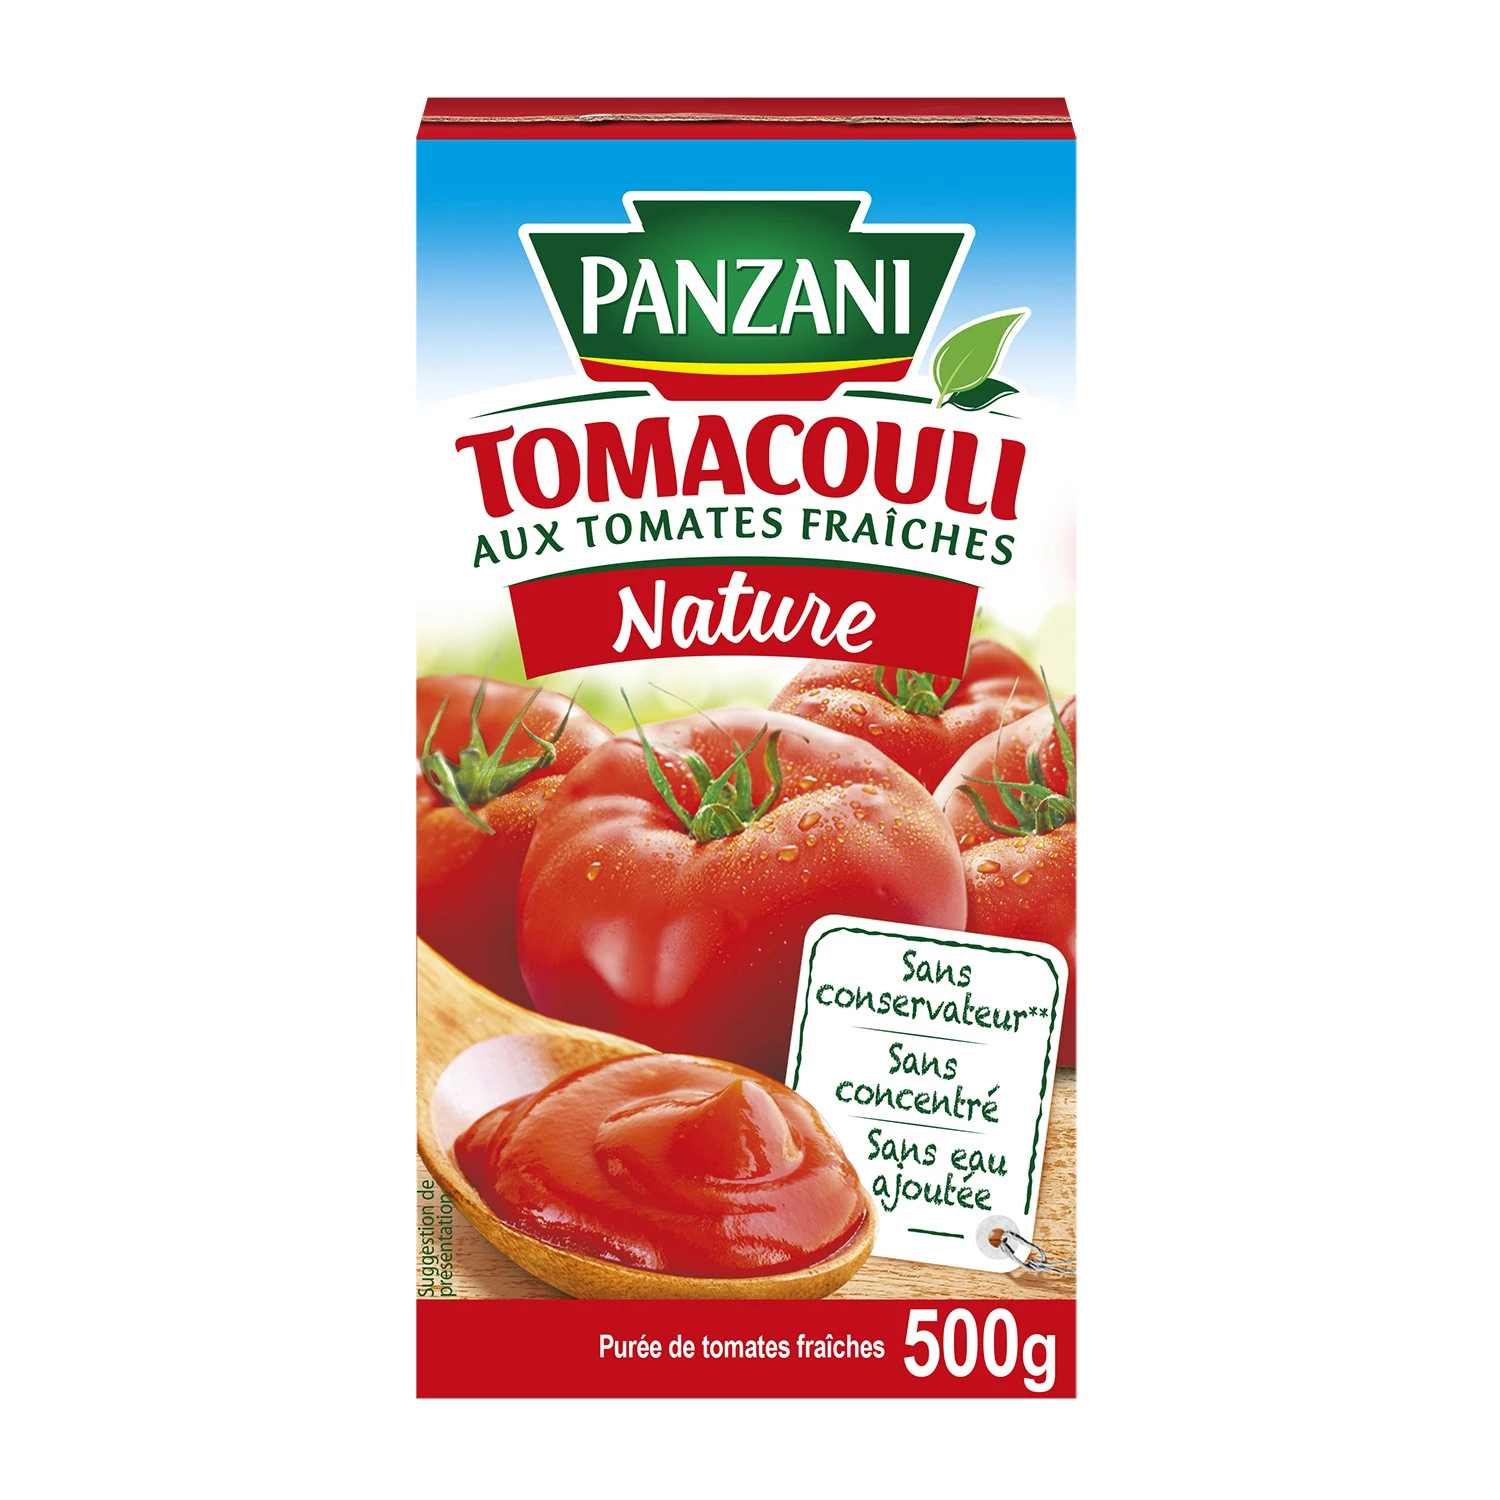 طبيعة توماكولي؛ 500 جرام - PANZANI